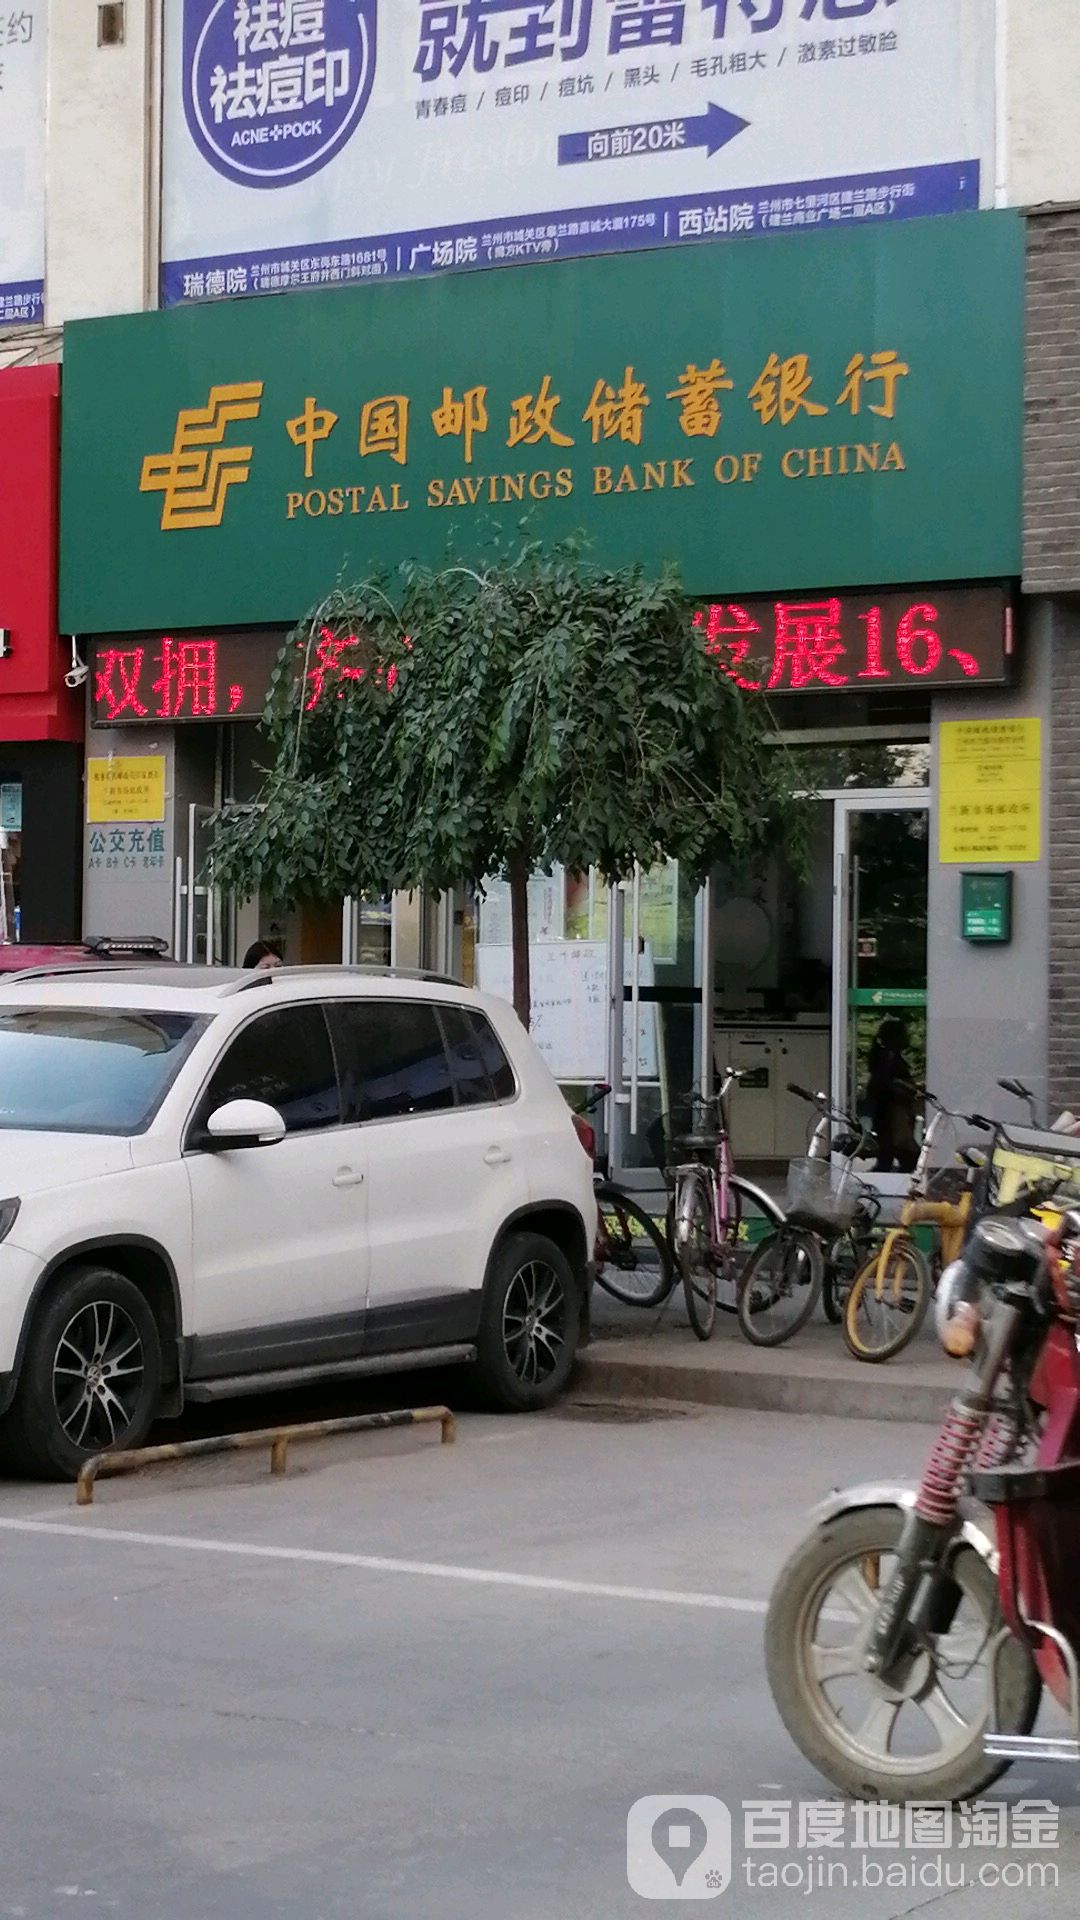 中國郵政儲蓄銀行24小時自助銀行(蘭州市蘭新市場支行)